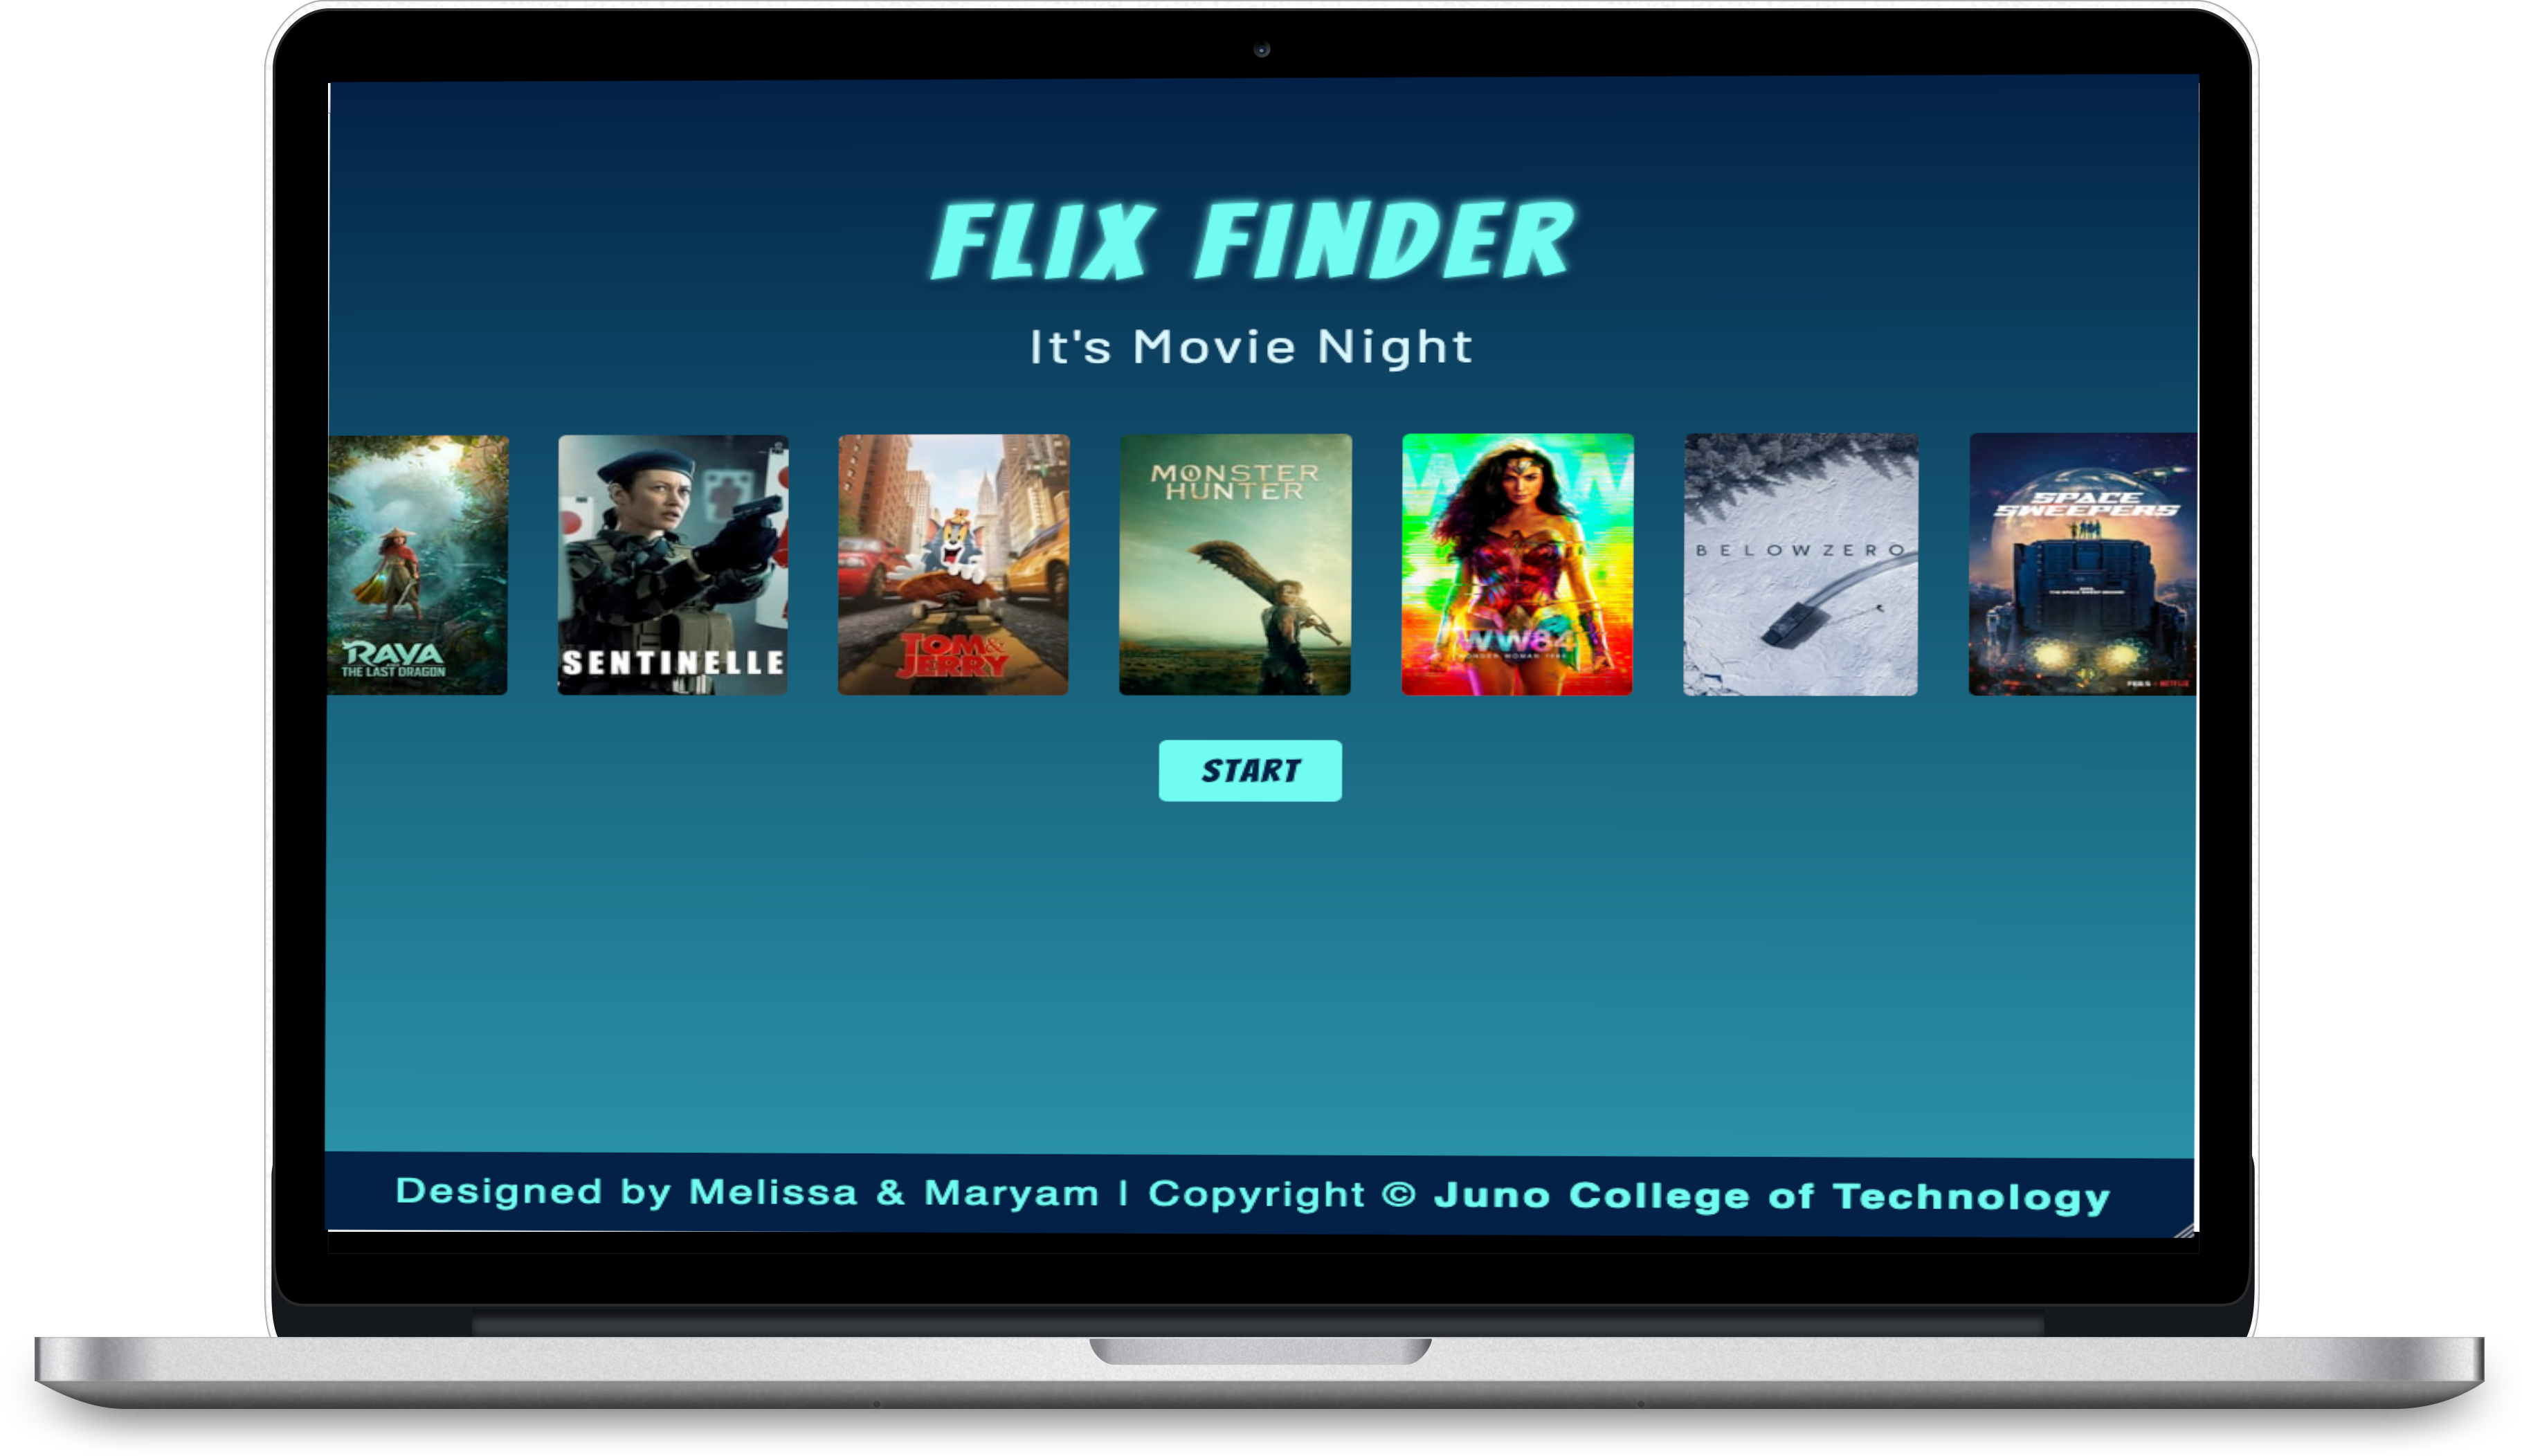 An image of movie finder app called flix finder